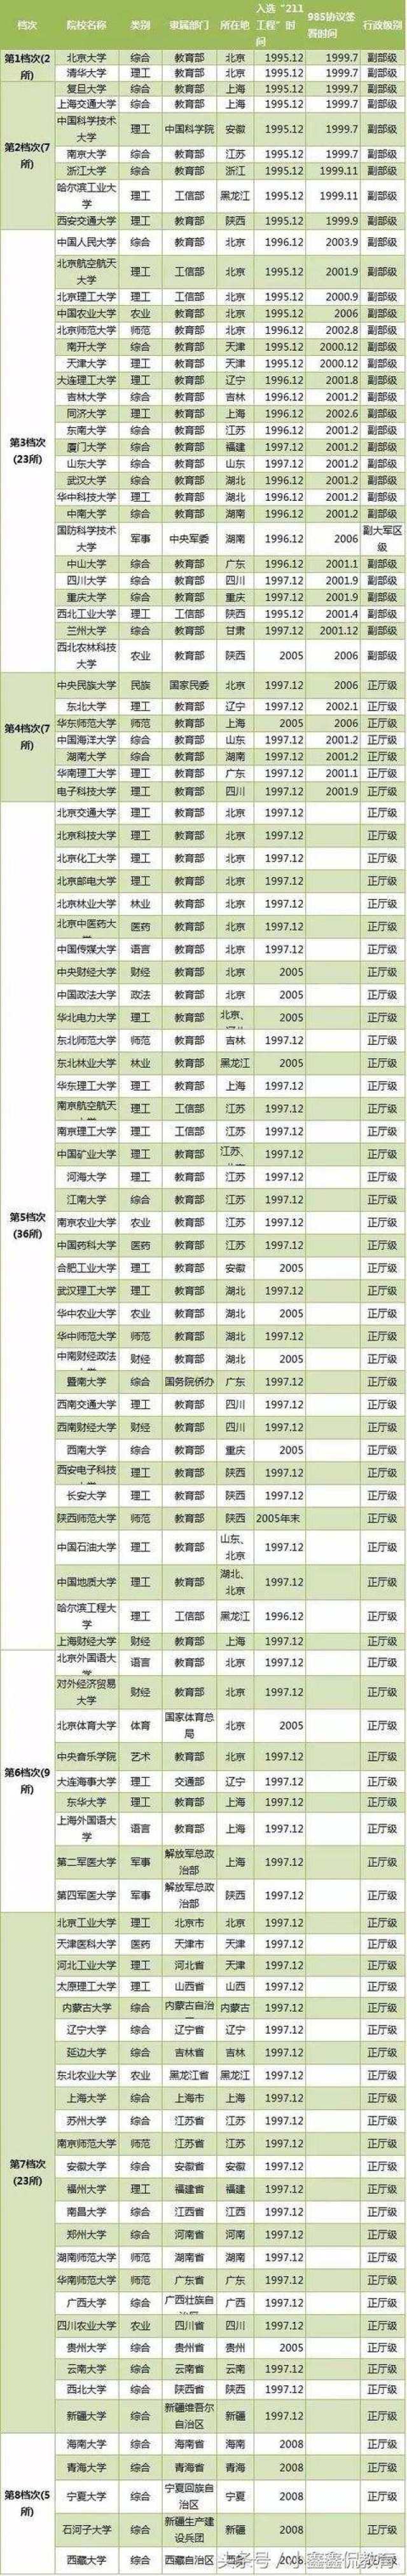 中国最强211大学排行榜: 部分学校竟超985!(二战快进)